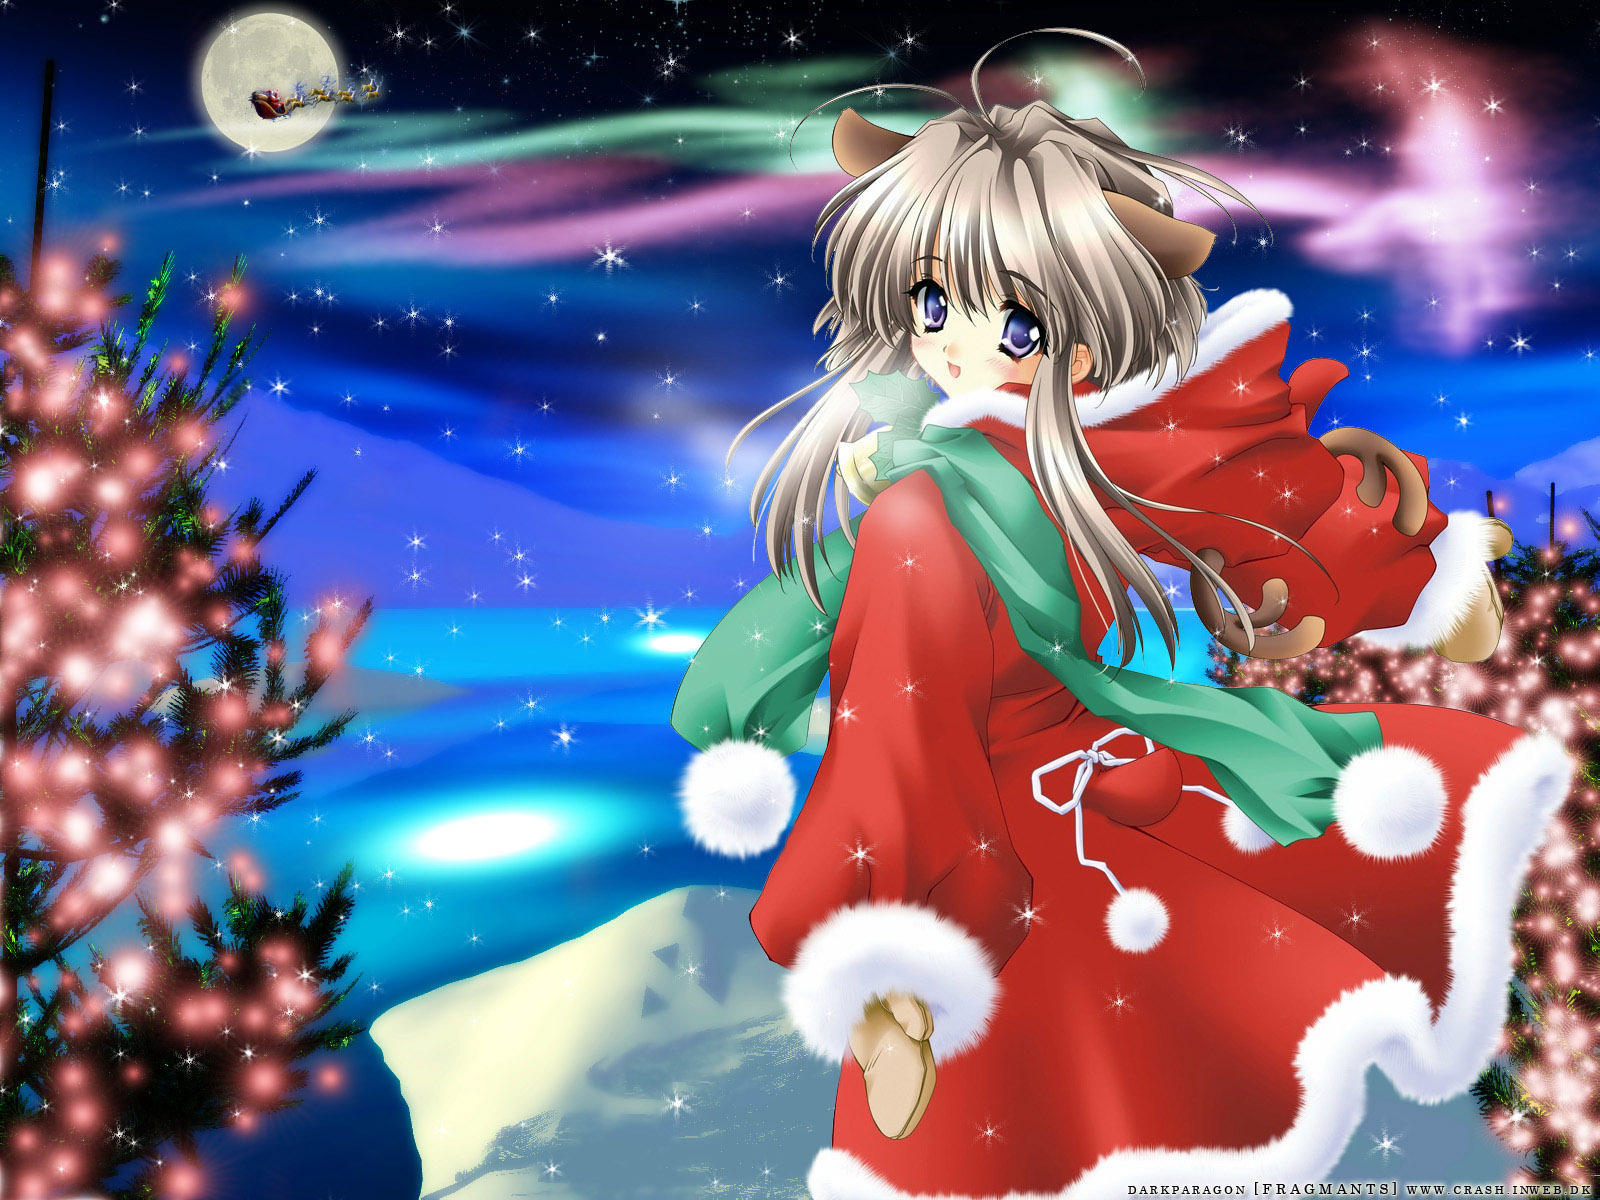 Tải miễn phí bộ ảnh đáng yêu Anime Christmas Google Skins để tạo không khí Noel đầy ấm áp cho máy tính của bạn. Những hình ảnh đáng yêu này sẽ mang đến cho bạn cảm giác ngập tràn niềm vui trong mùa lễ hội. Hãy tải ngay và cùng nhau chào đón Giáng Sinh thật ấm áp nhé!